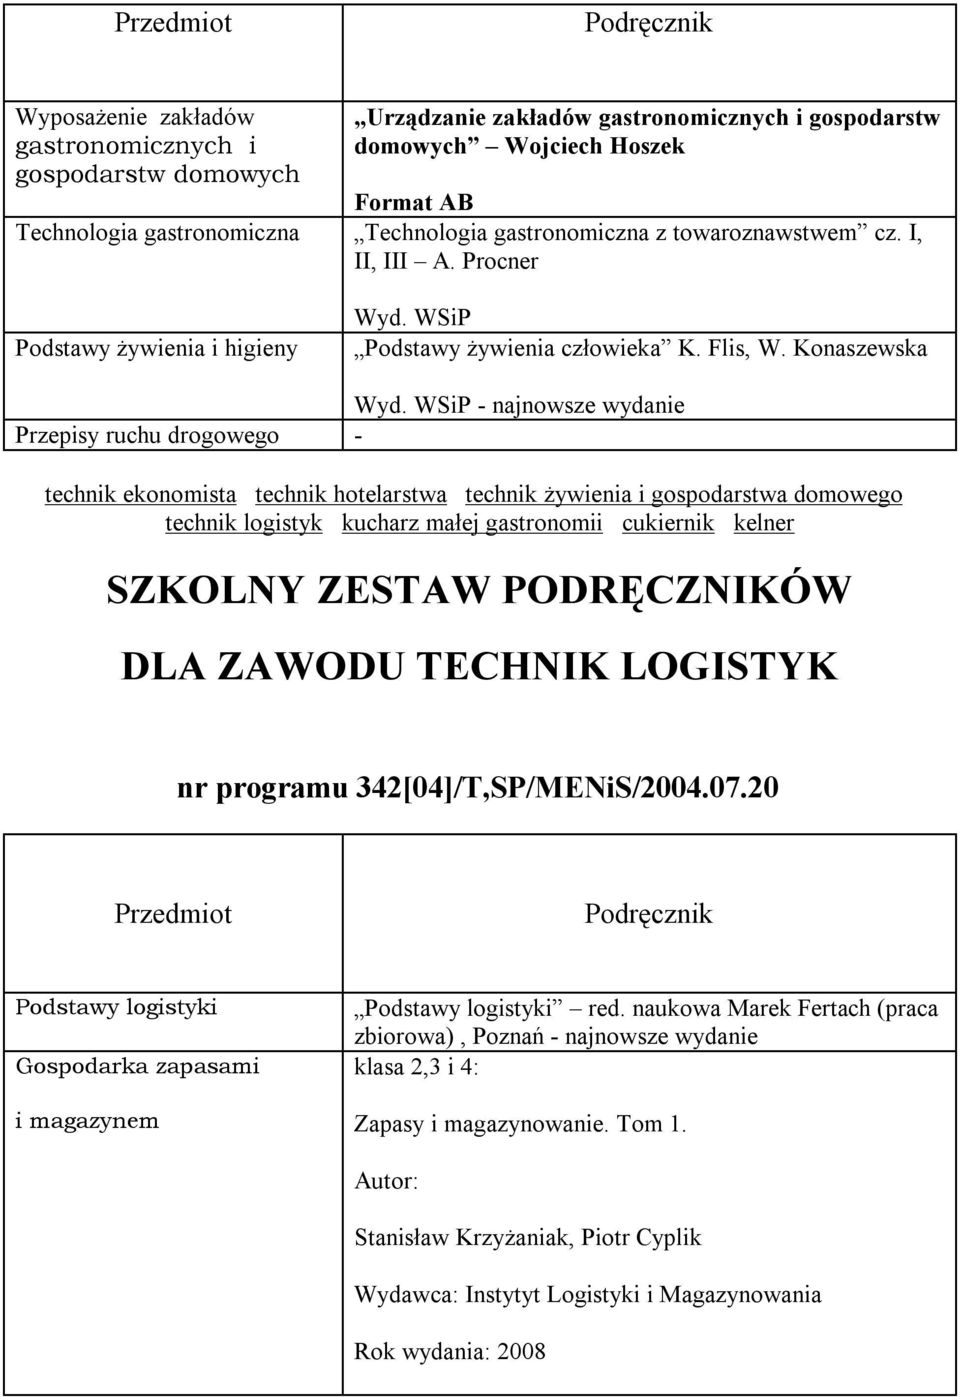 Konaszewska - najnowsze wydanie Przepisy ruchu drogowego - DLA ZAWODU TECHNIK LOGISTYK nr programu 342[04]/T,SP/MENiS/2004.07.